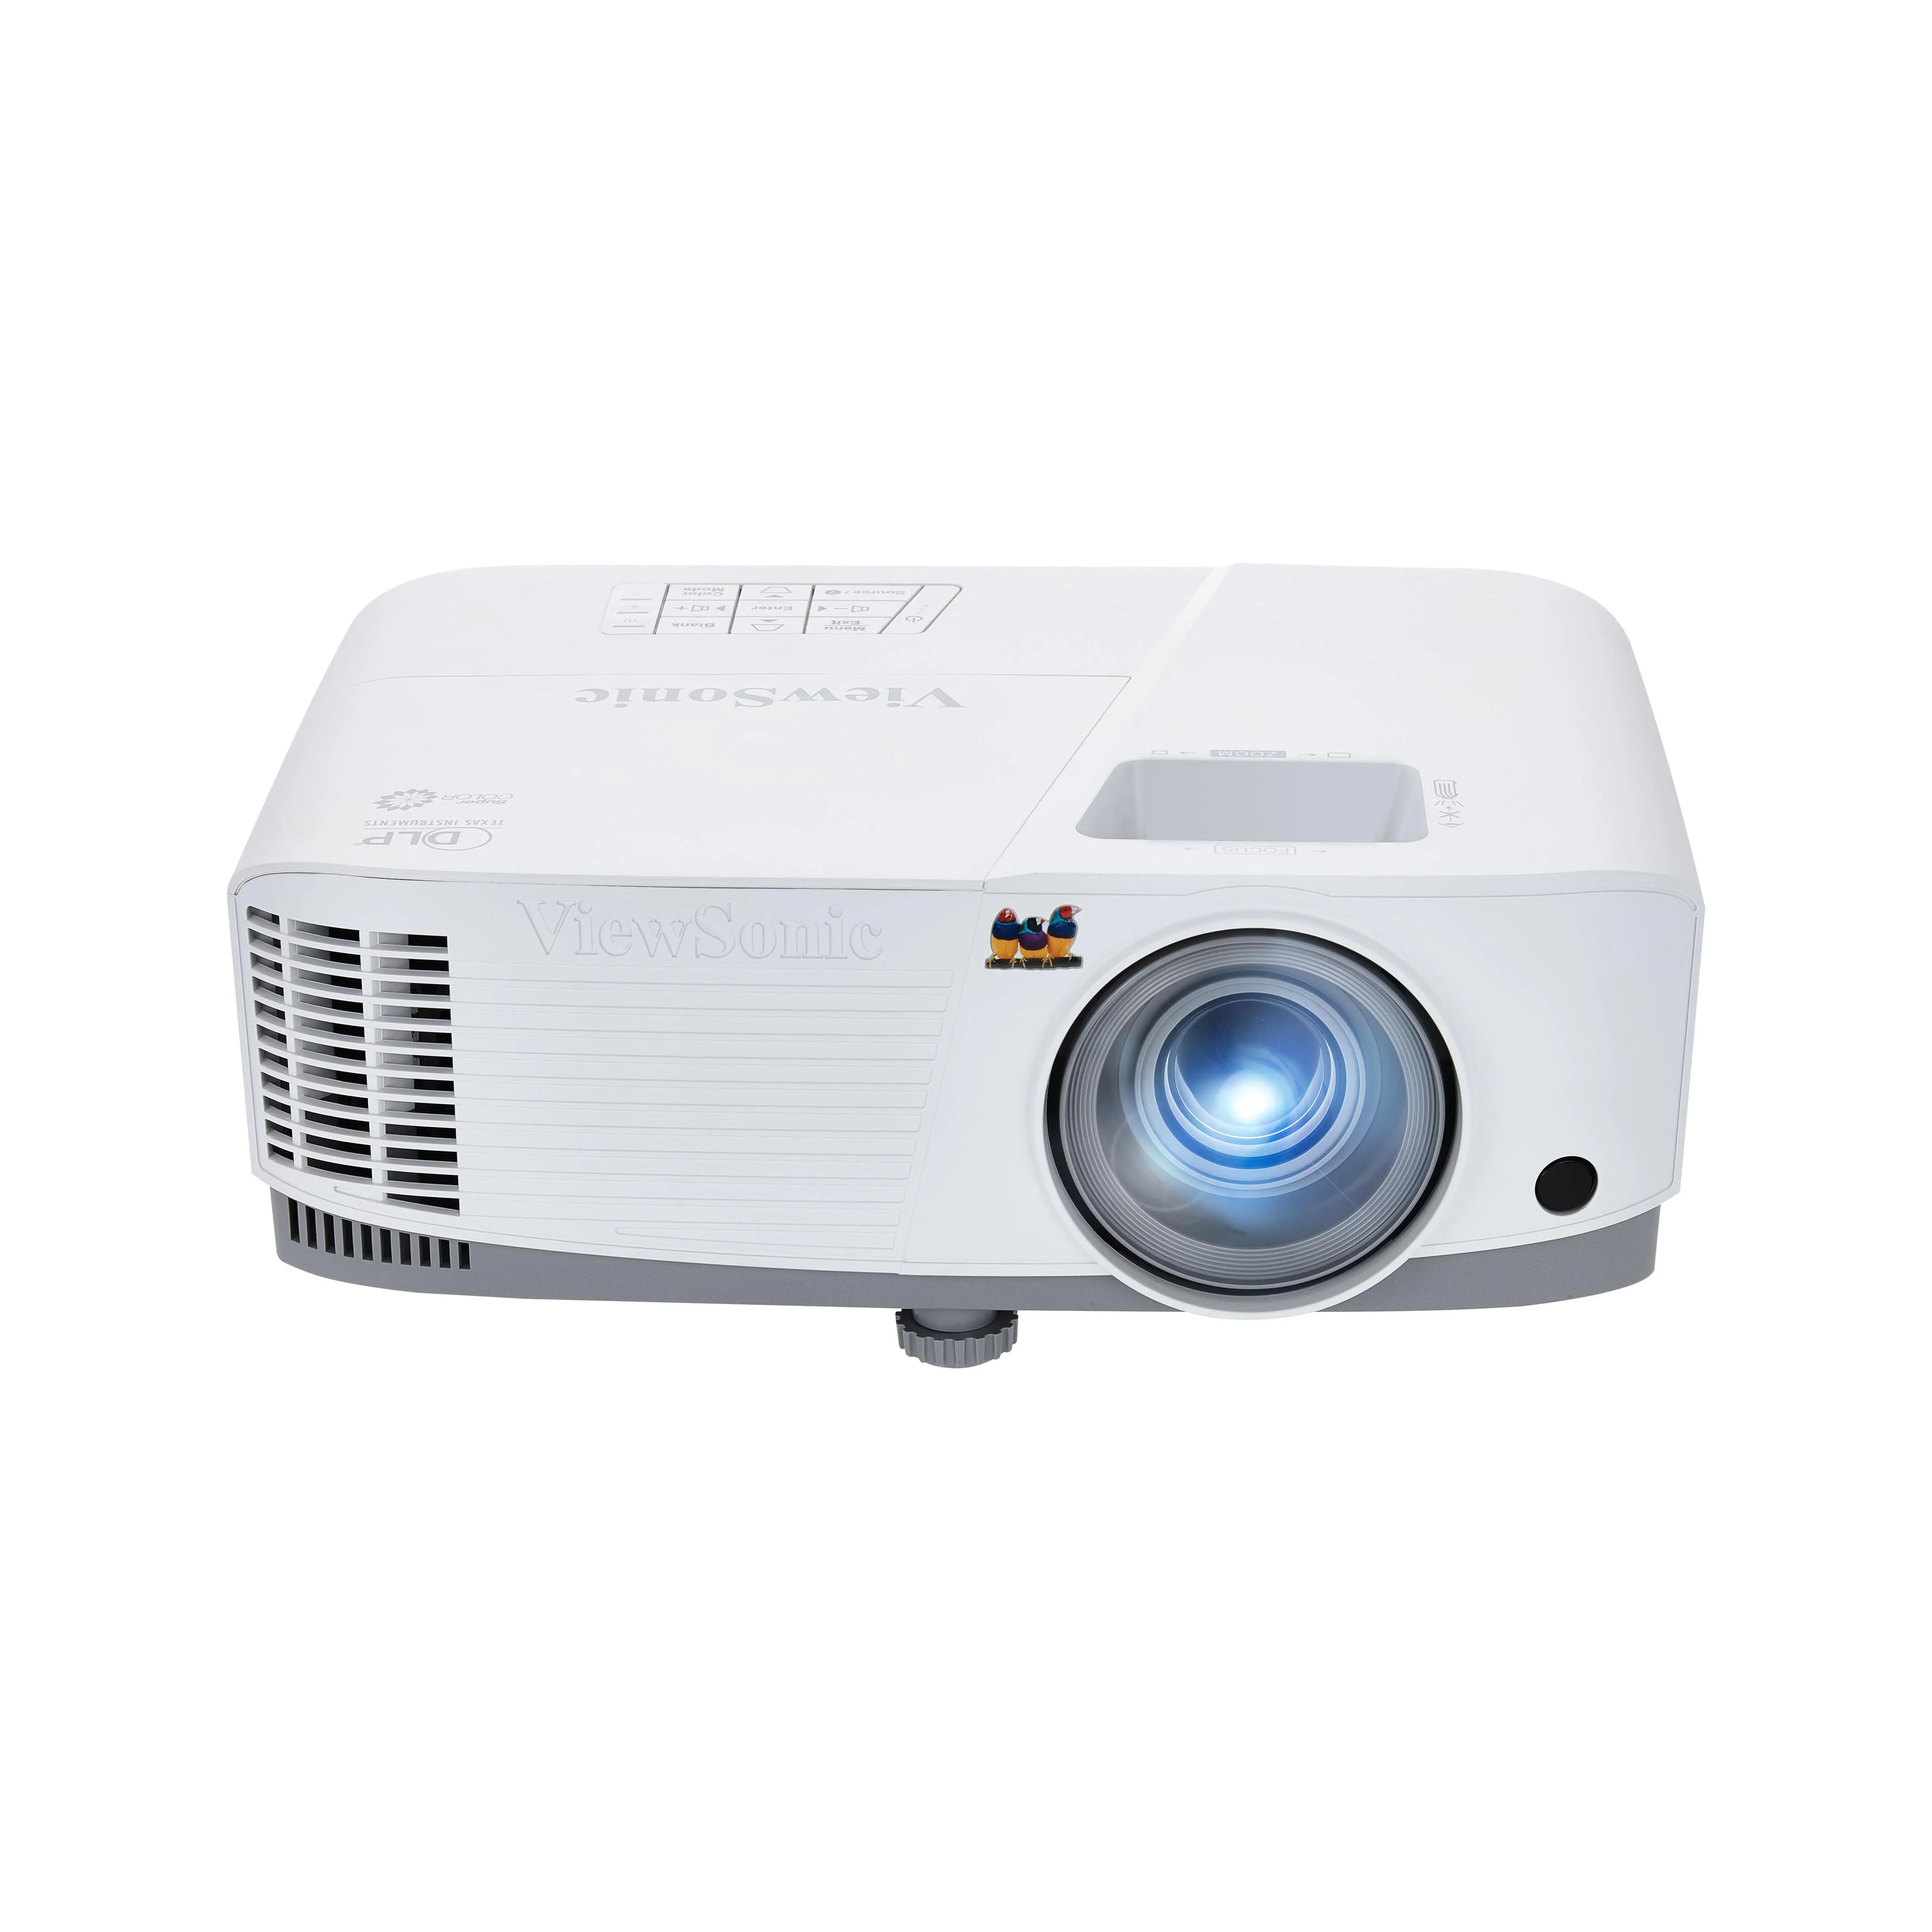 

ViewSonic TB5030 3D Smart DLP Projector HD 4000 Lumens XGA Projectors for Education High Contrast Video Projectors